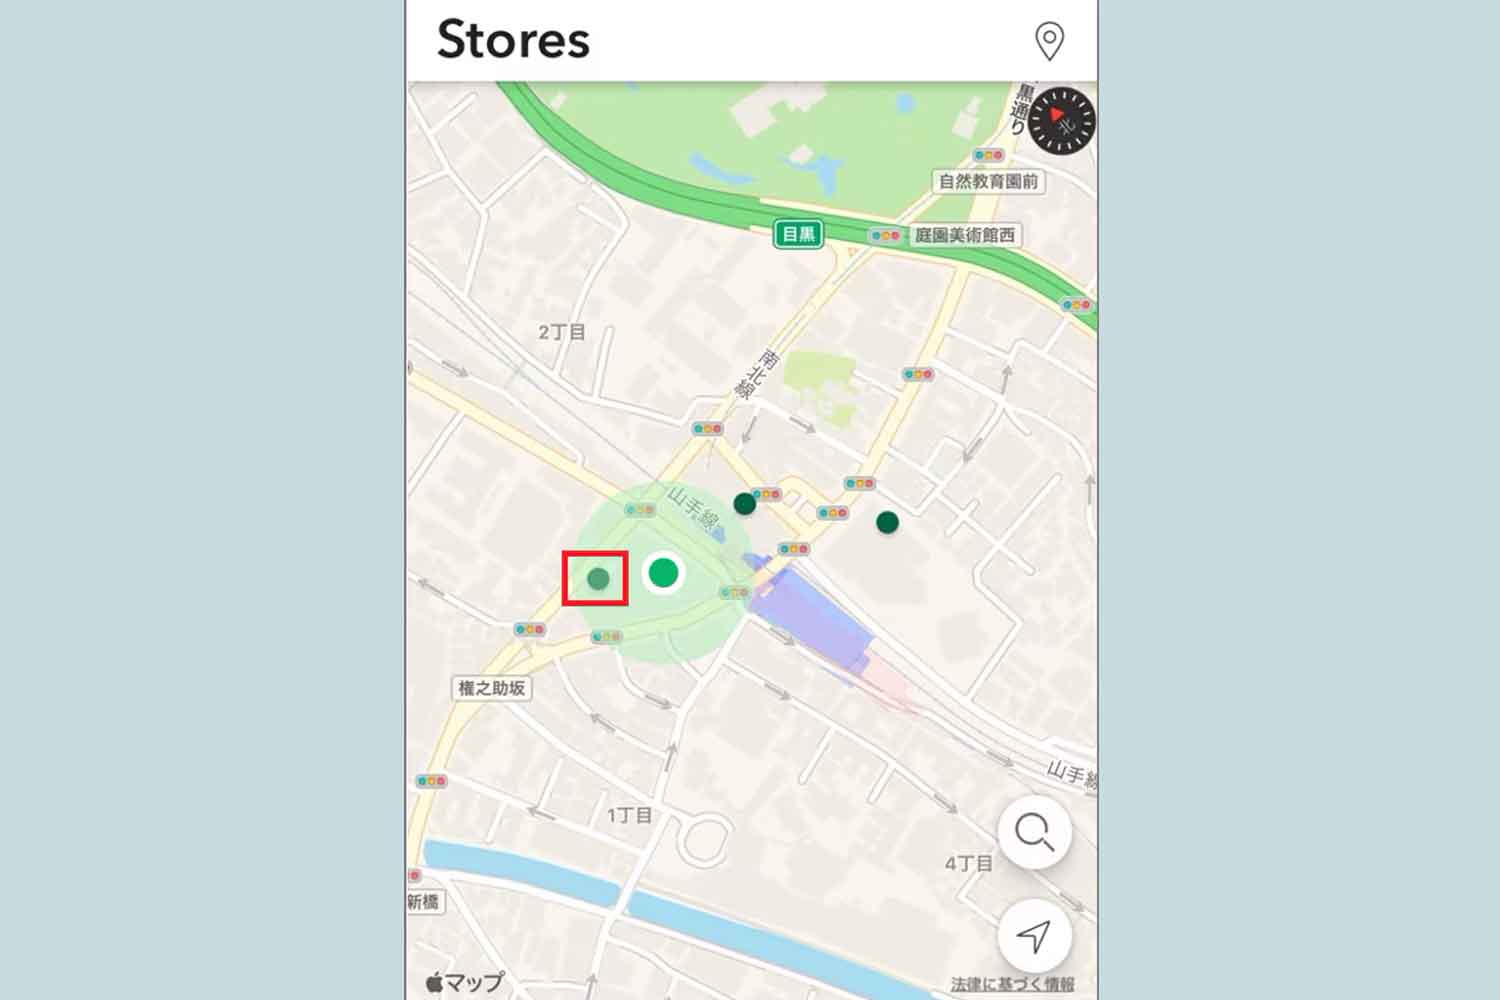 スターバックス公式アプリの店舗検索画面 〜 画像4